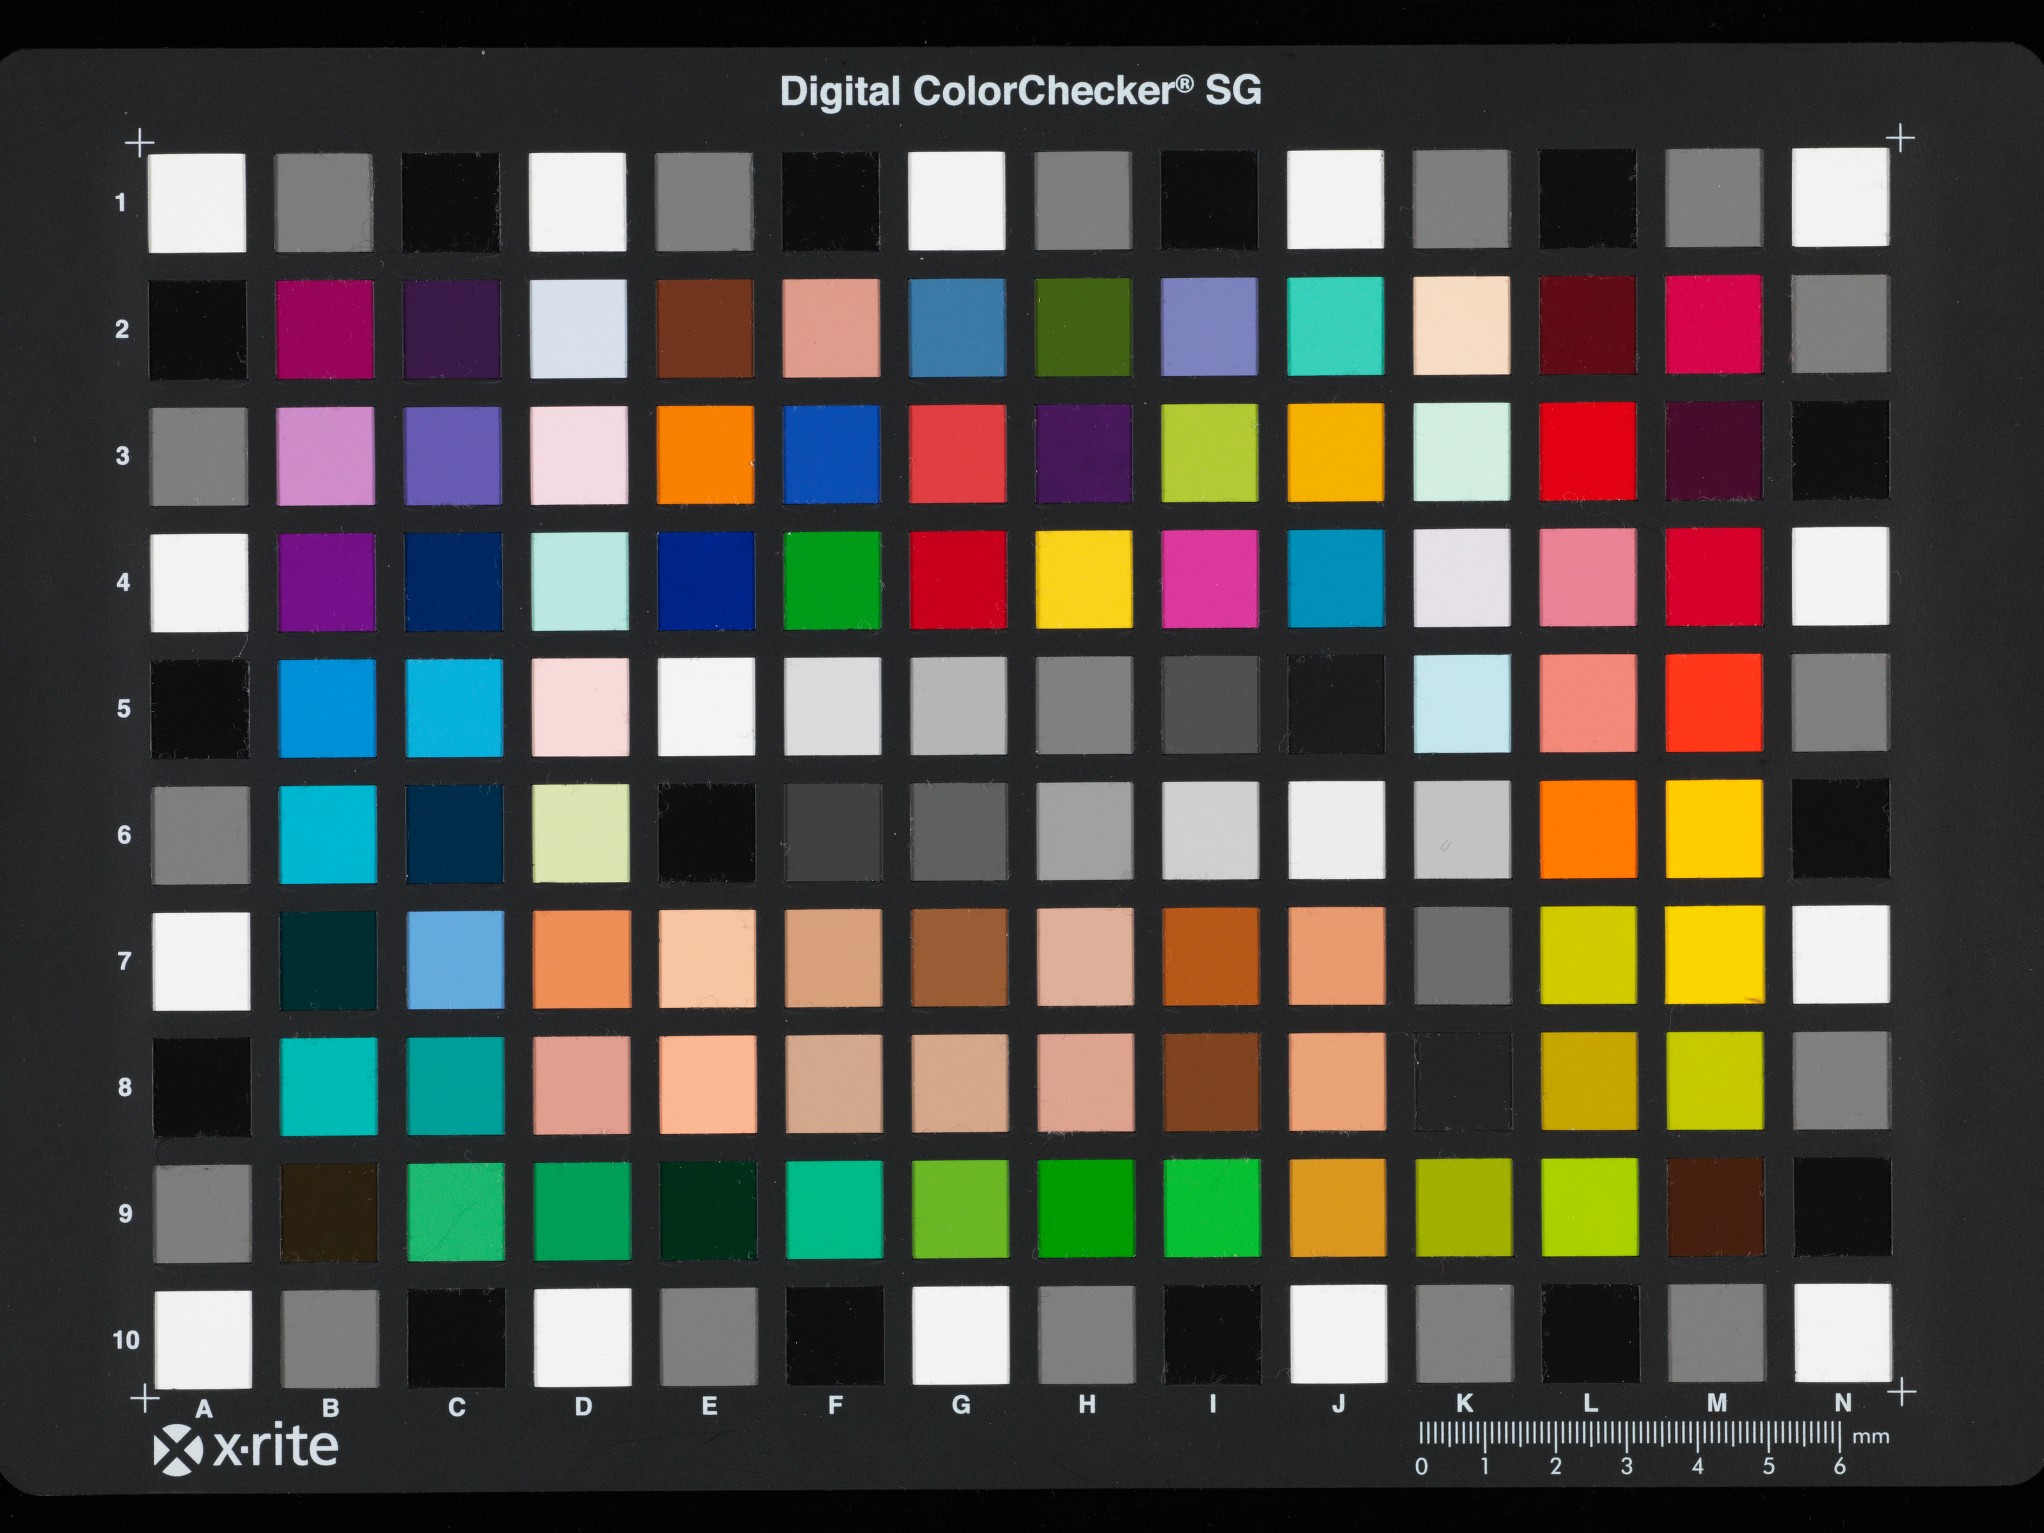 Digital Colorchecker